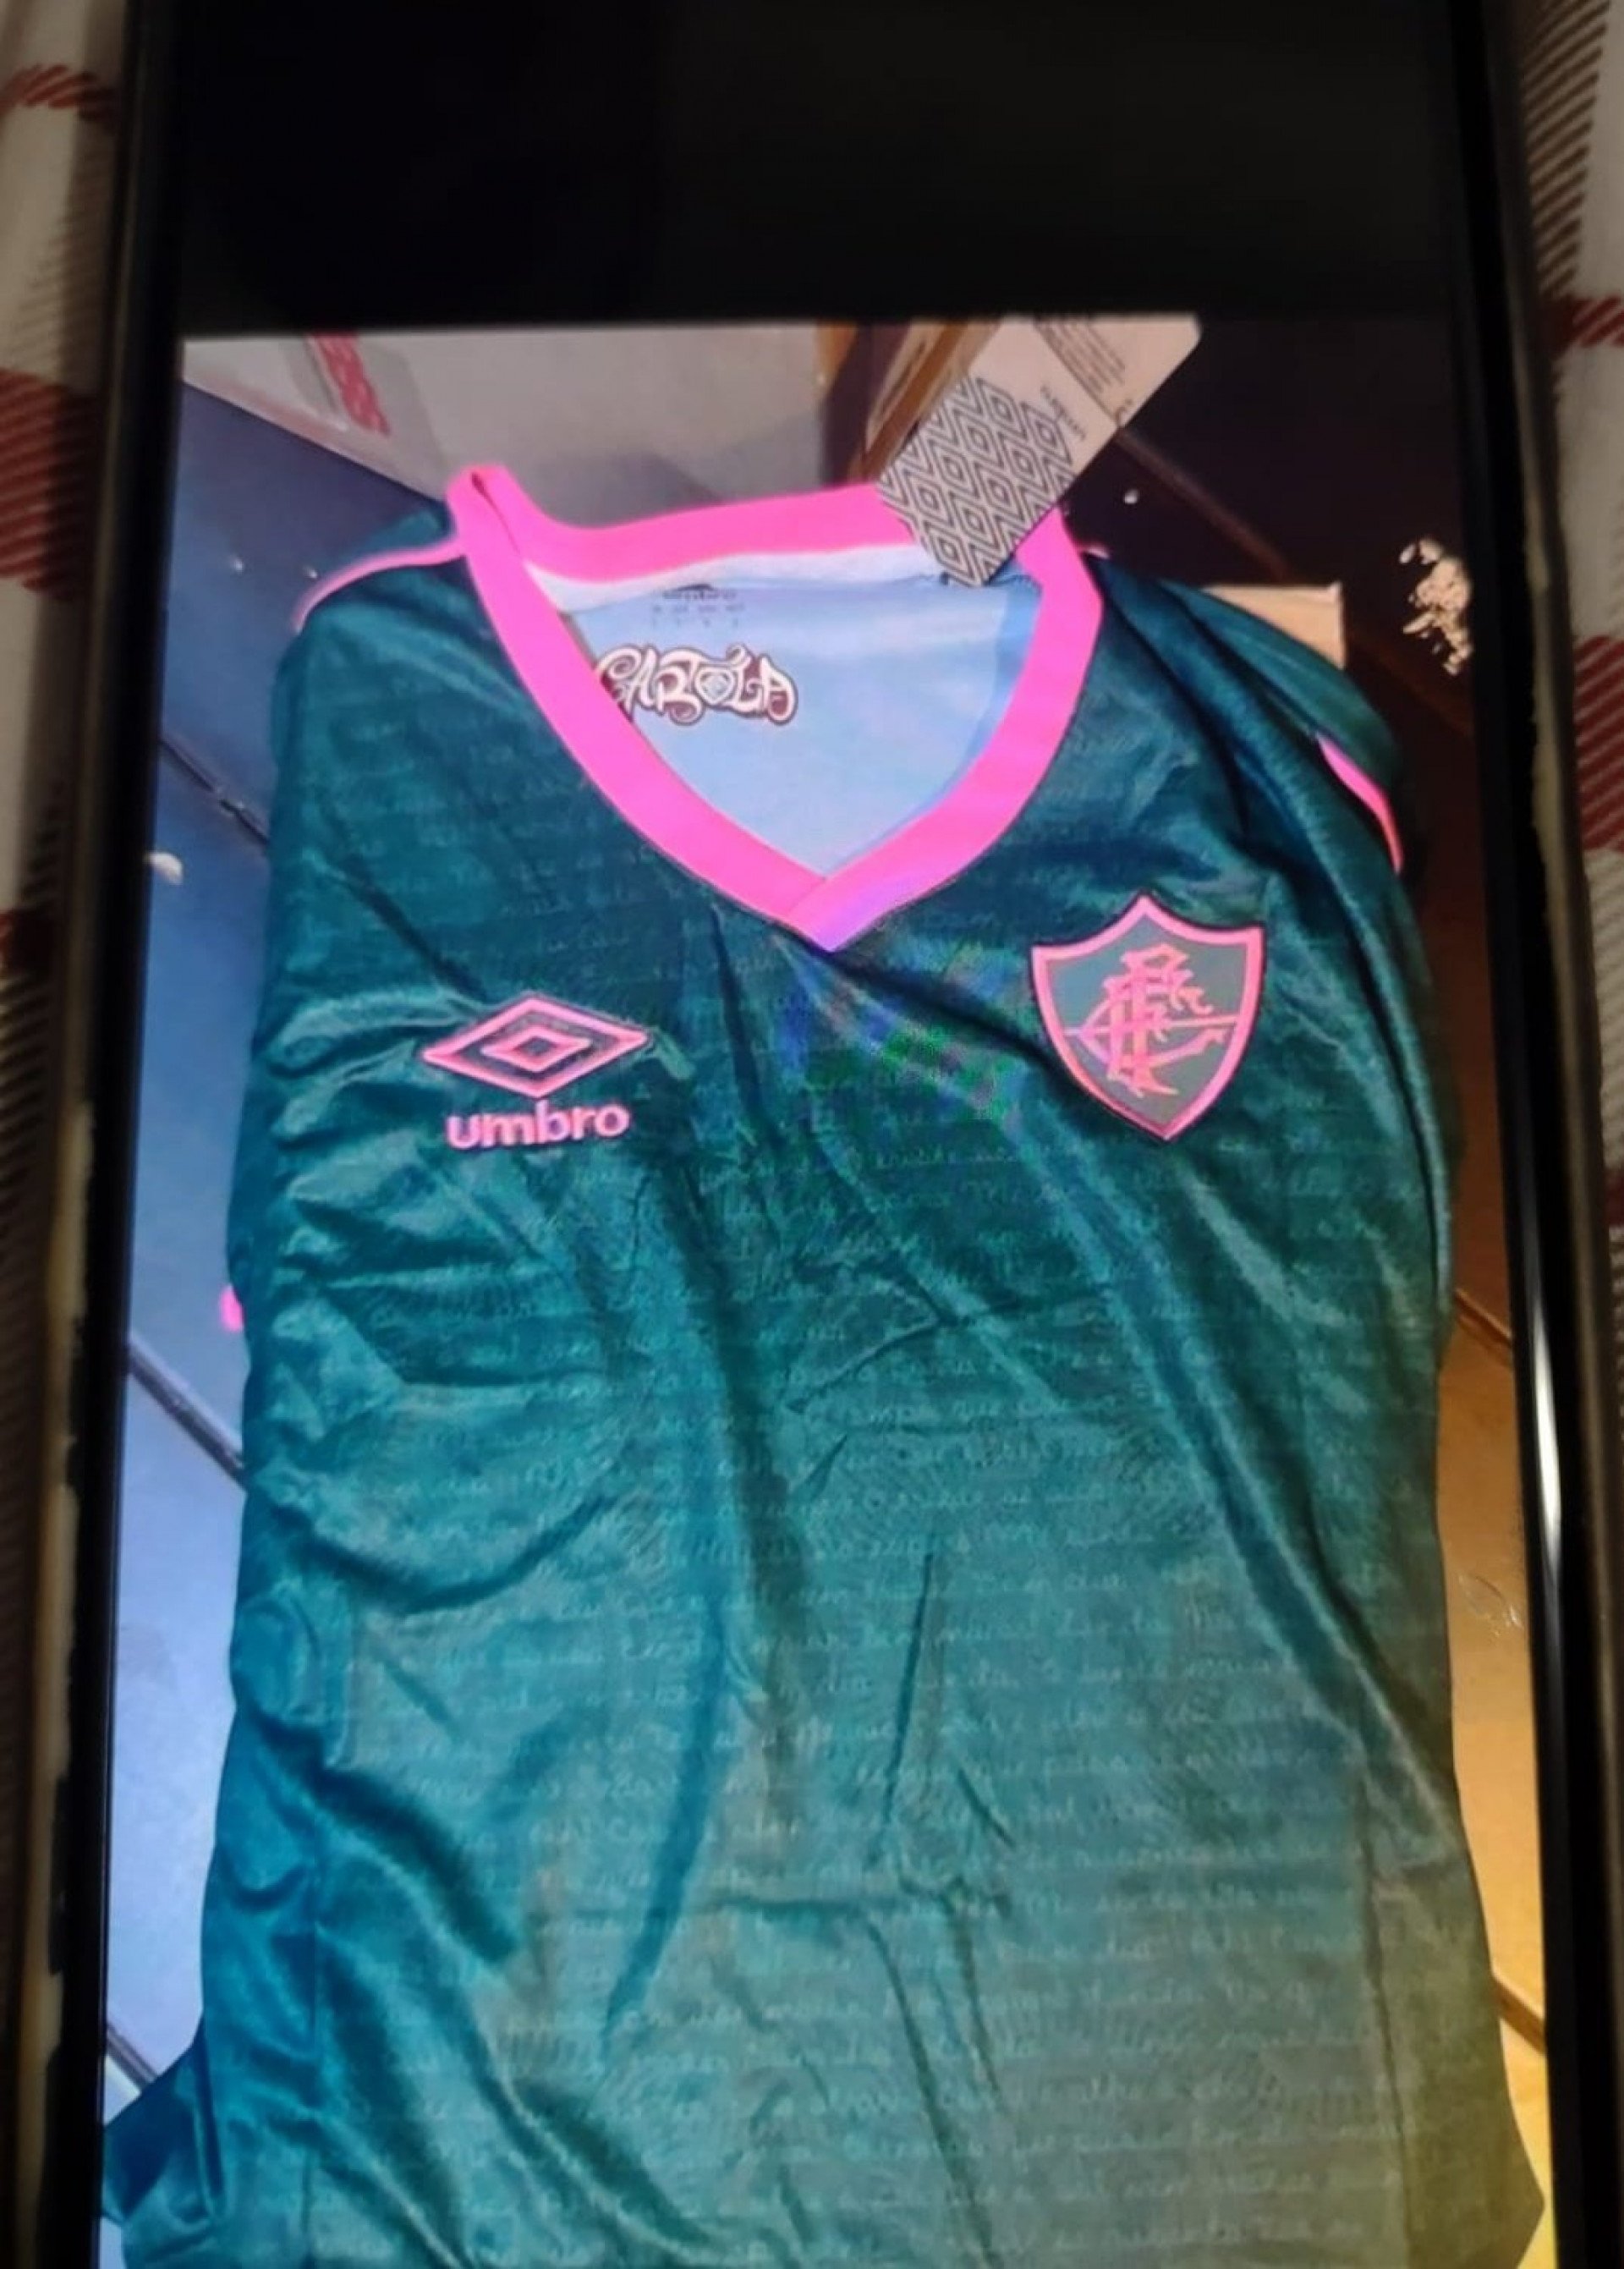 Imagem vazada da camisa do Fluminense que homenageia Cartola - Foto: Reprodução